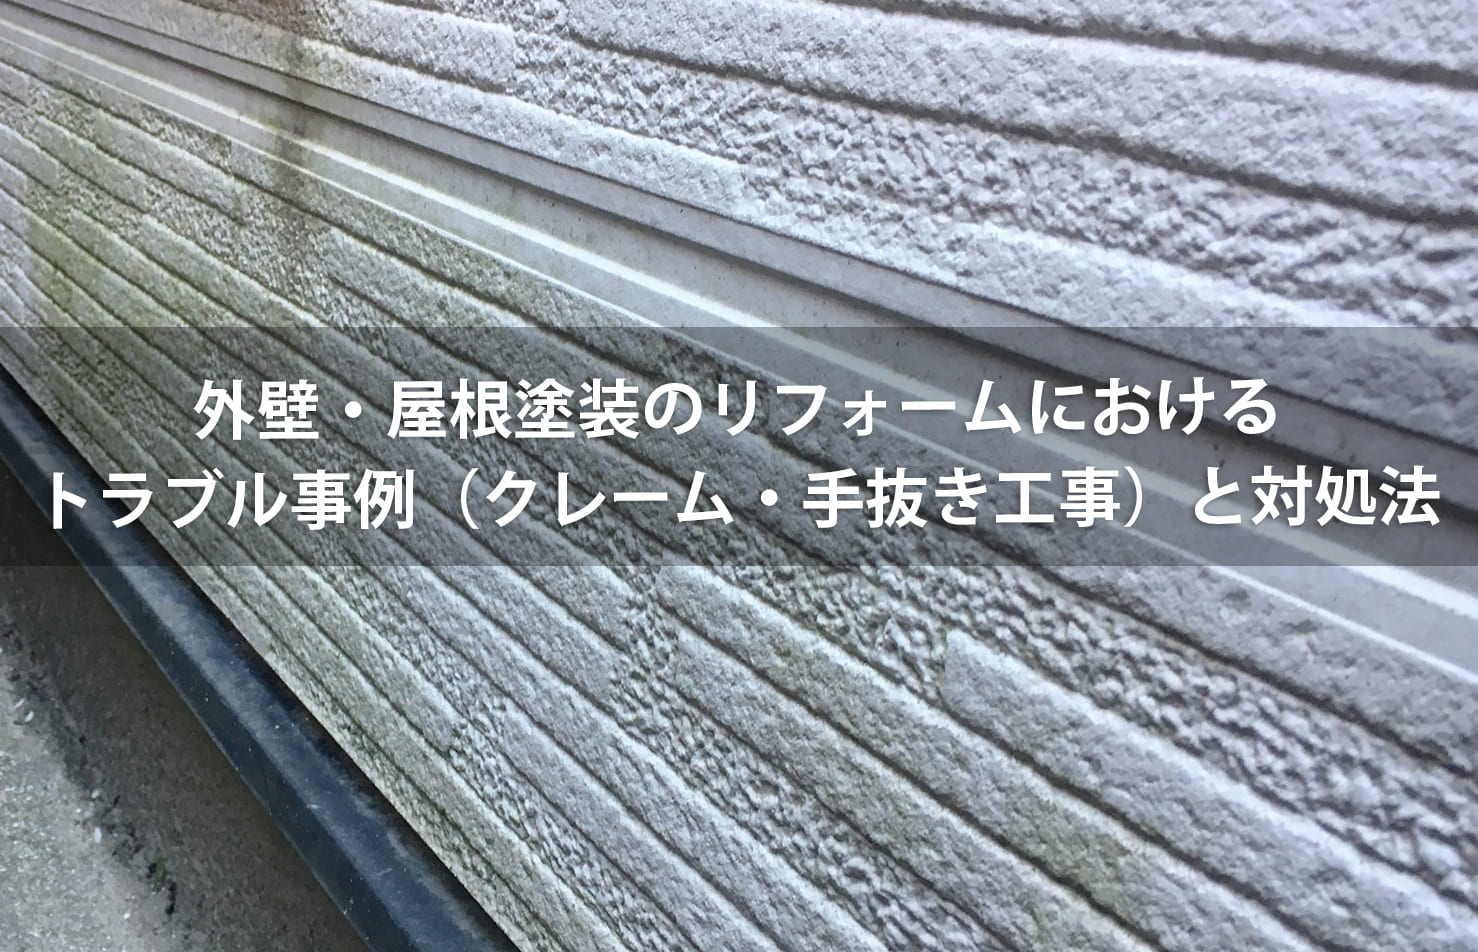 外壁・屋根塗装のリフォームにおけるトラブル事例（クレーム・手抜き工事）と対処法